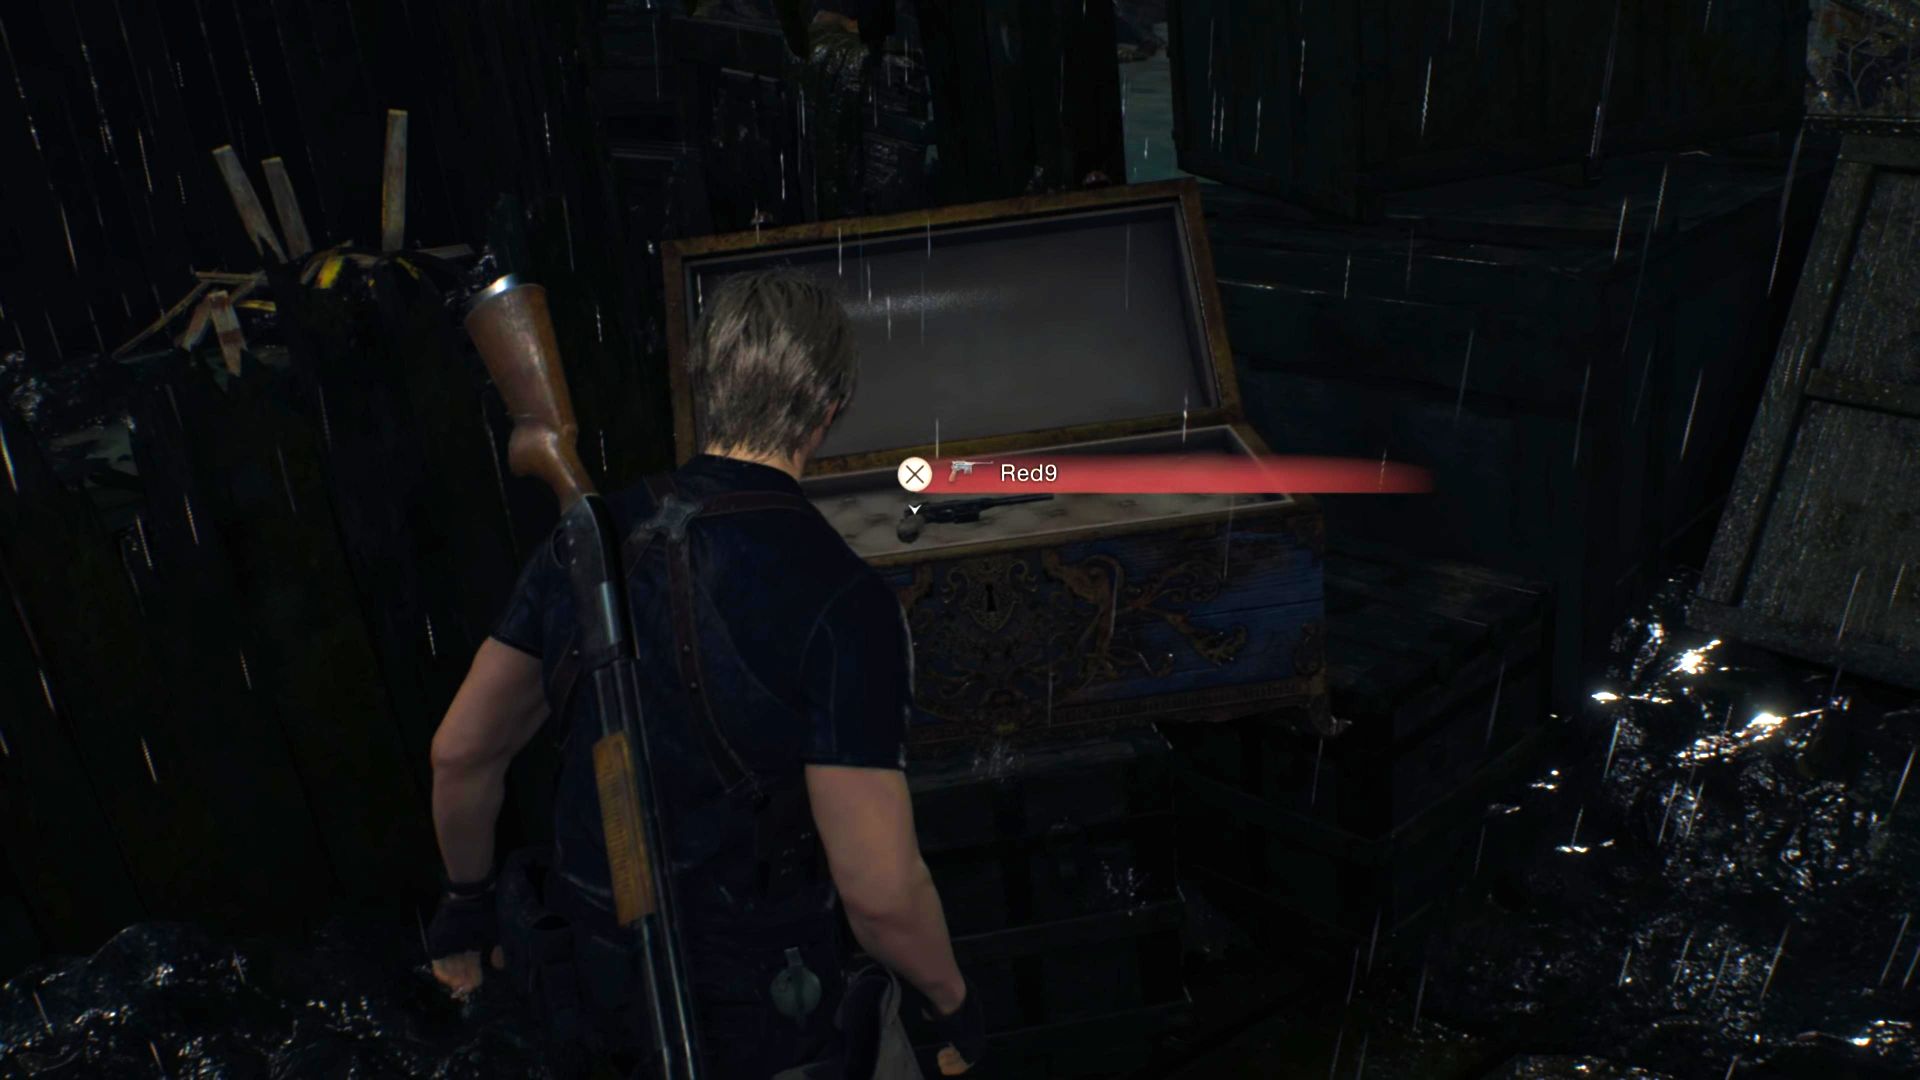 Lokasi Resident Evil 4 Remake Red9: Leon berdiri di depan peti biru berisi Red9 di dek kapal bobrok di tengah danau.